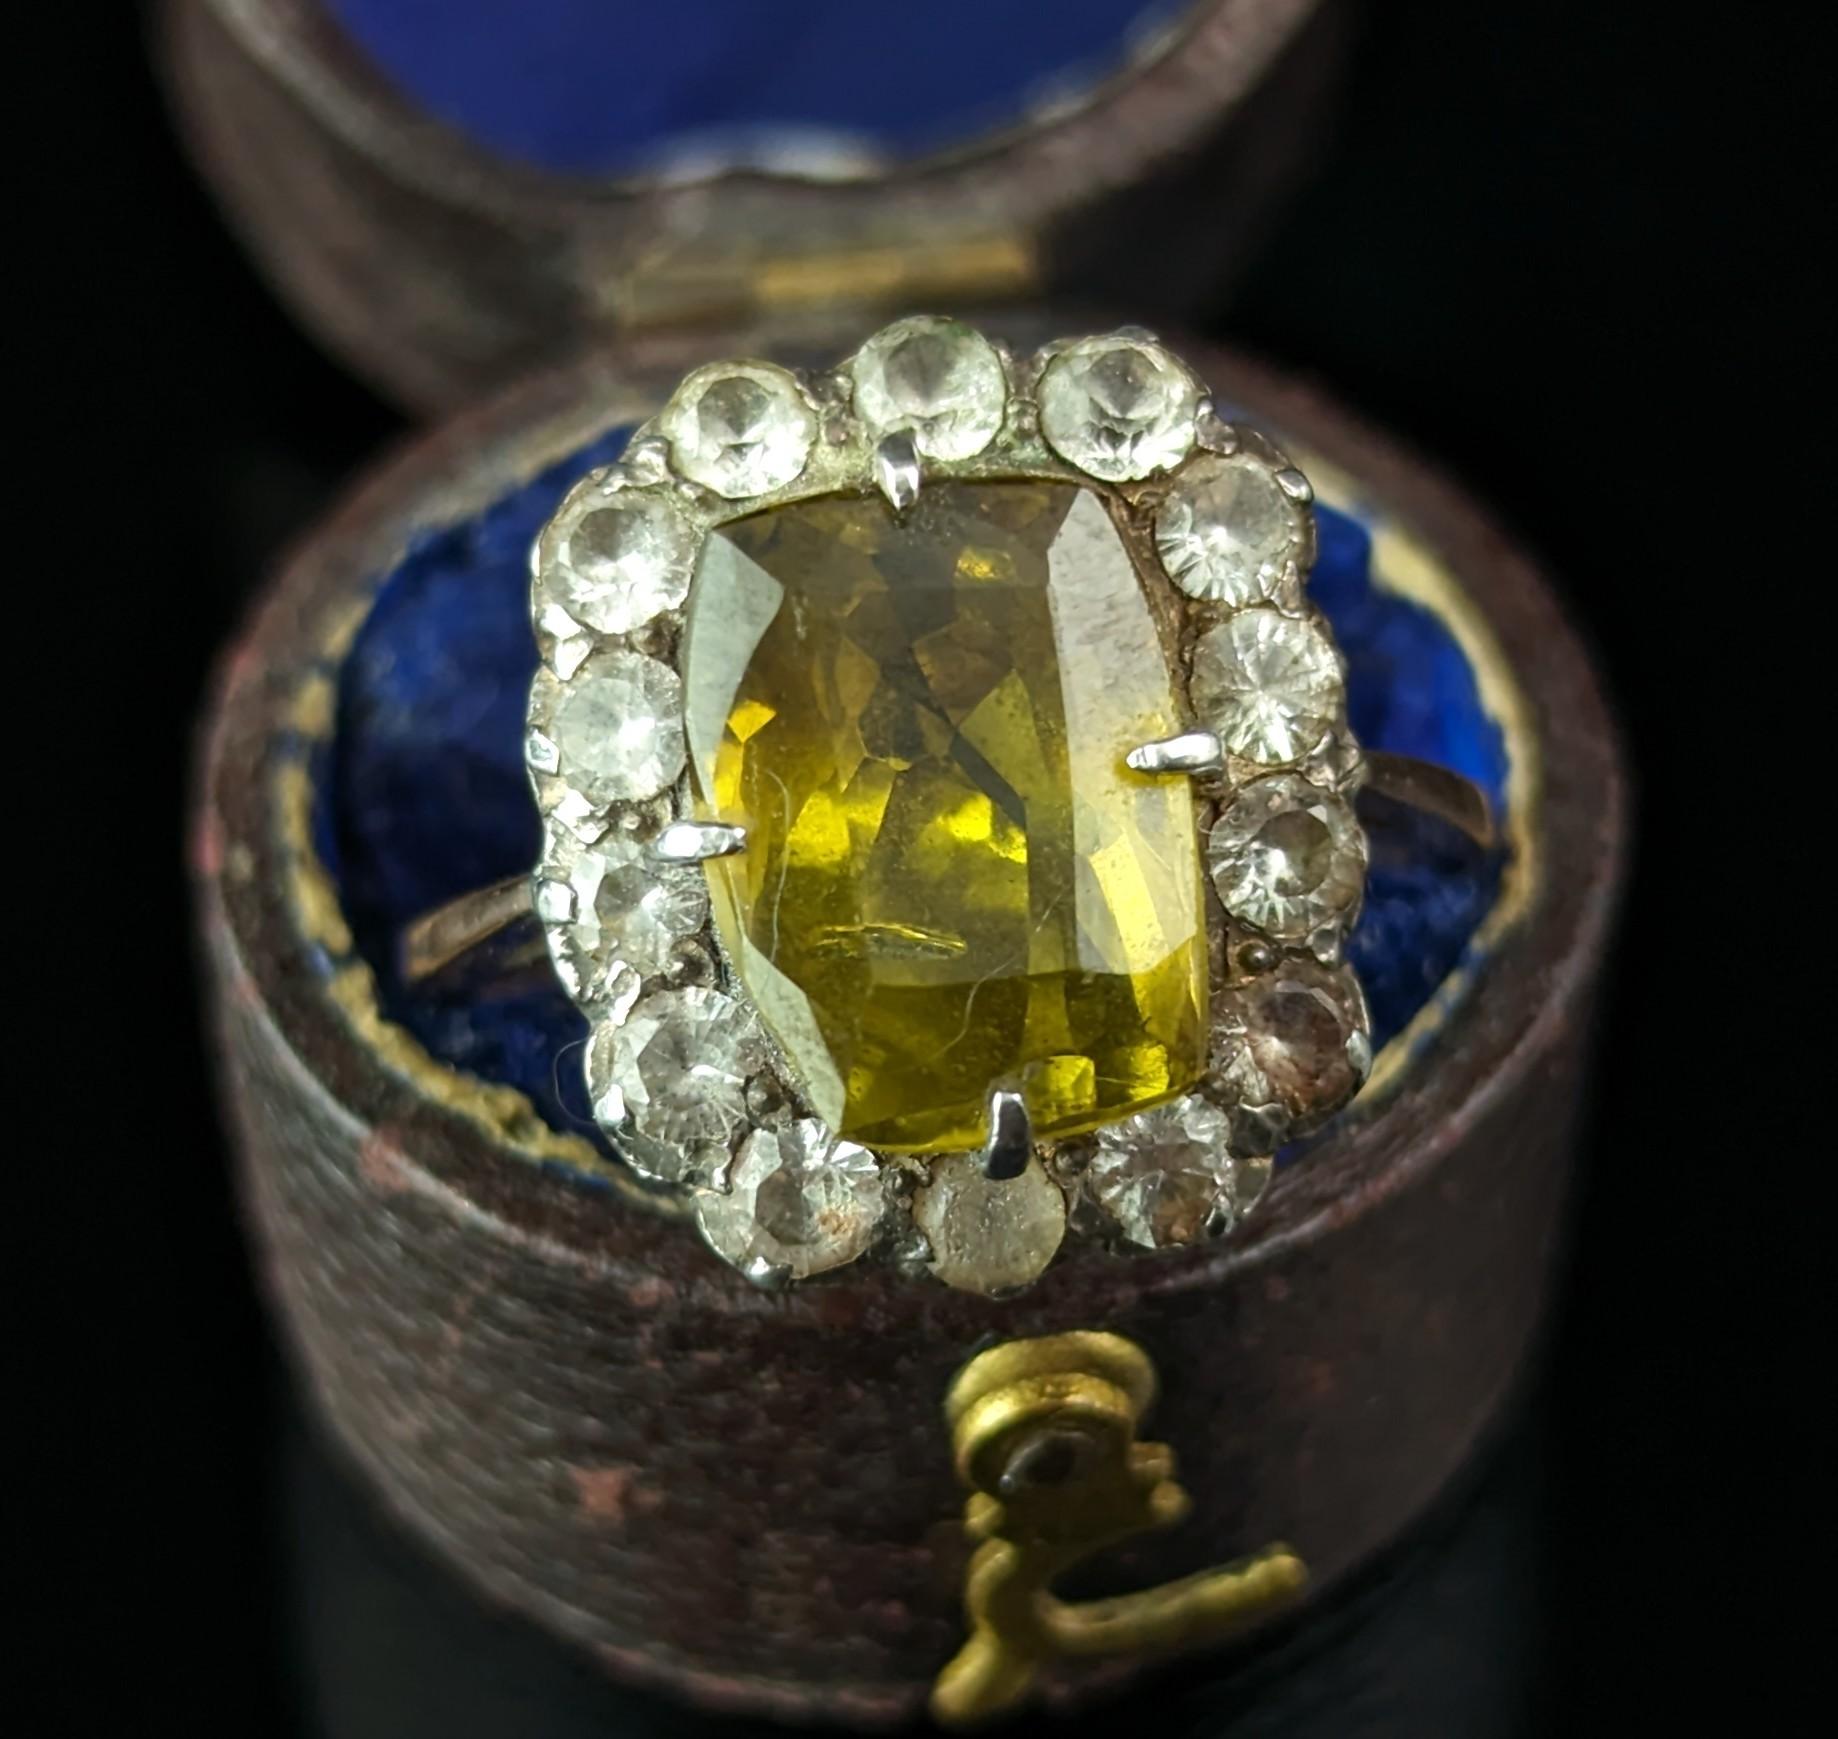 Dieser wunderschöne antike Chrysoberyll- und Paste-Cluster-Ring ist genau das Richtige, wenn Sie auf der Suche nach einer interessanten Ergänzung für Ihre antike Ringsammlung sind.

Sie ist aus reichem 9-karätigem Gelbgold mit einem glatten Band